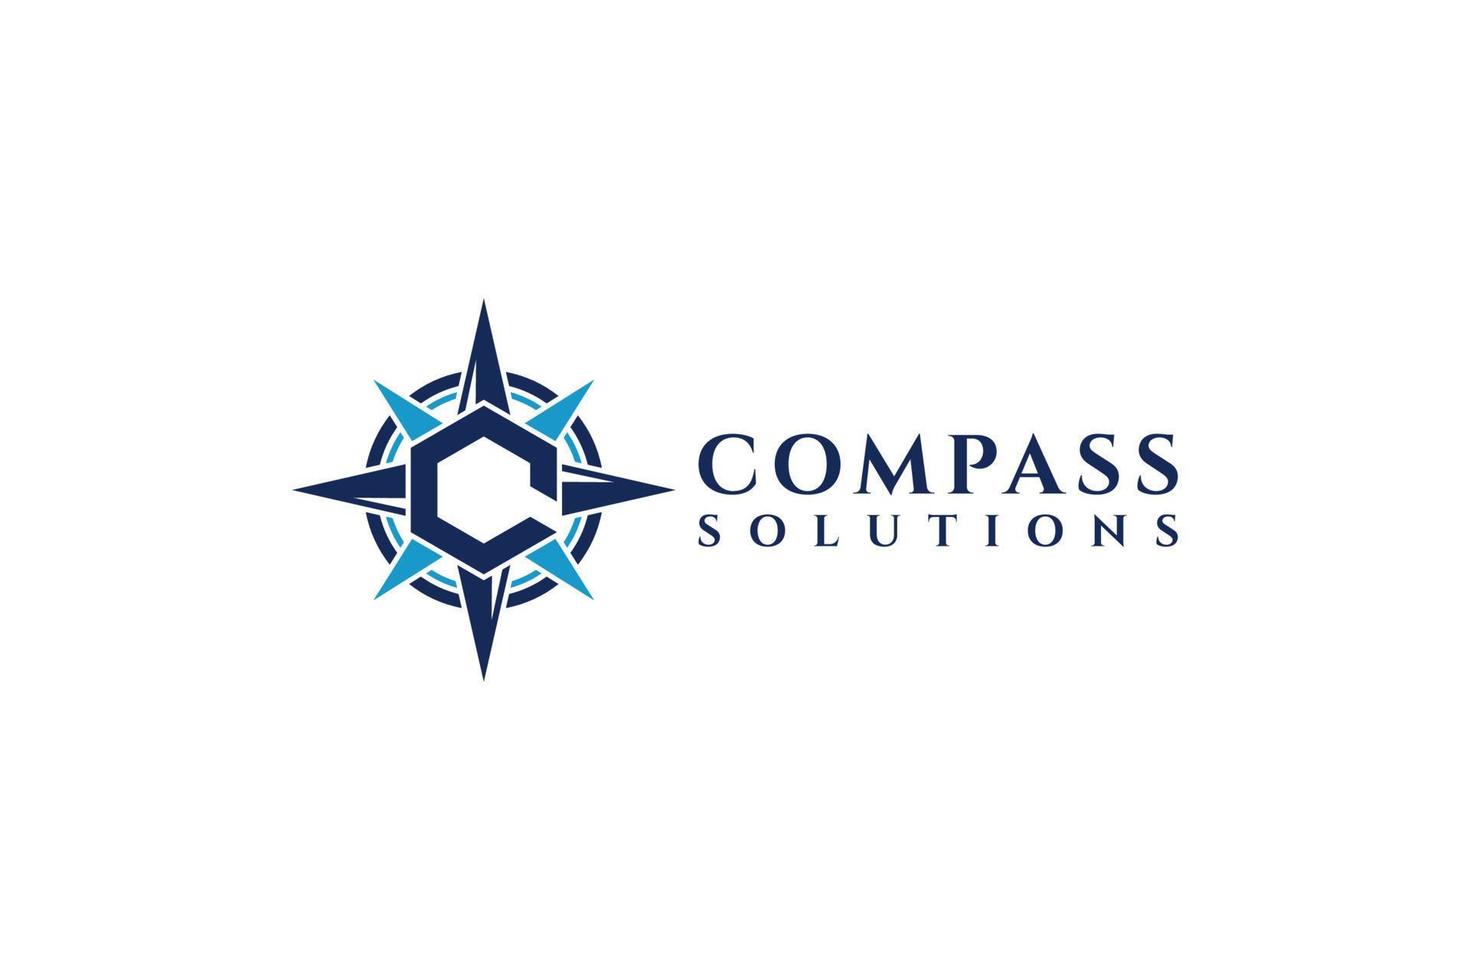 buchstabe c logo symbol kompass designvorlagenelemente. minimalistisches und modernes Vektorgrafikdesign, geeignet für Unternehmen und Marken vektor